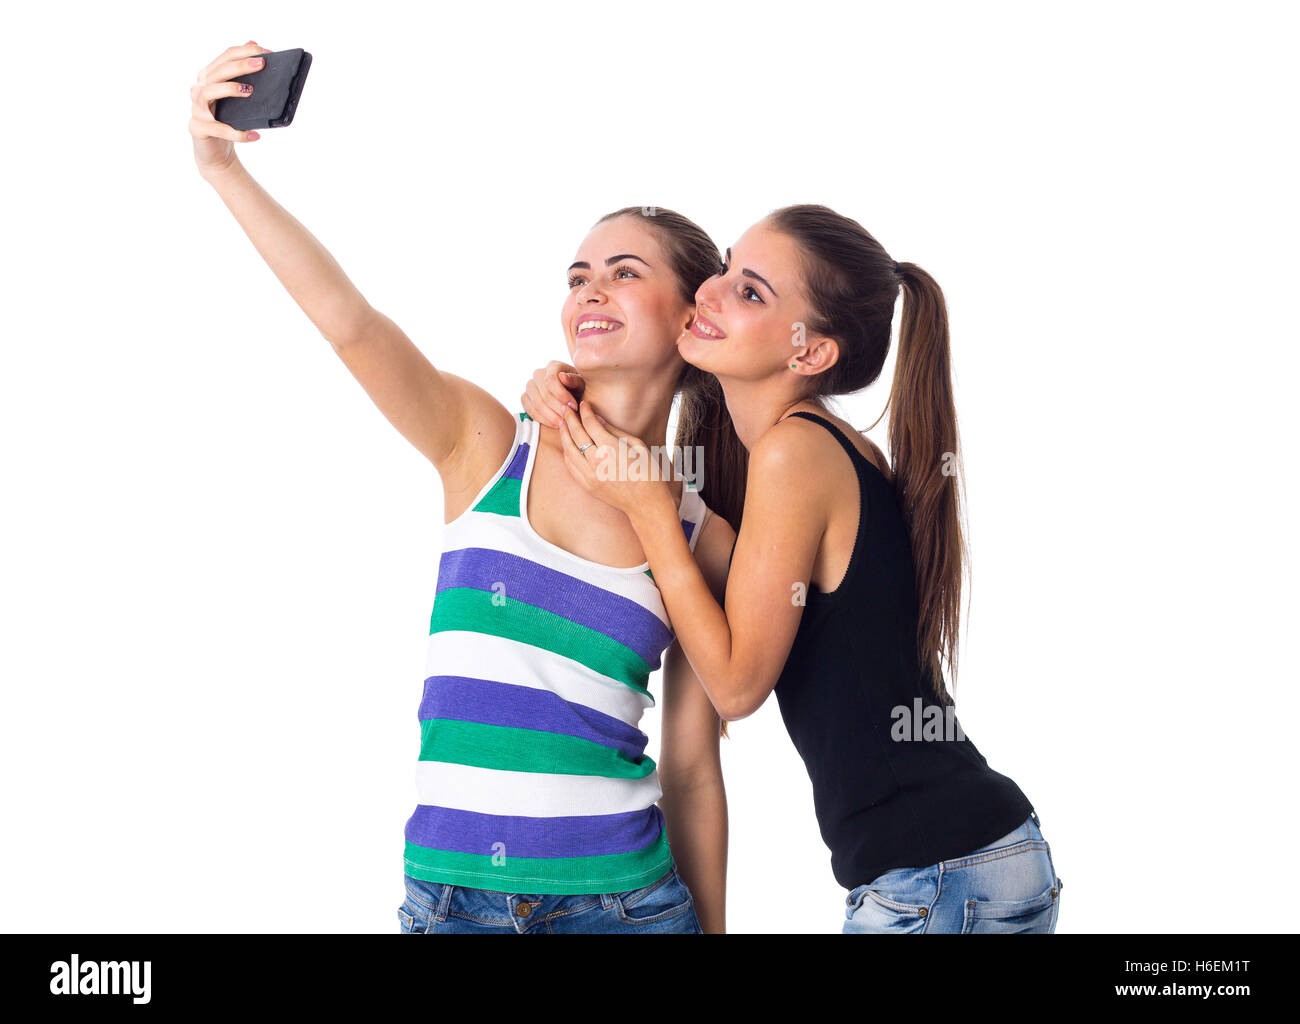 Zwei junge Frauen machen selfie Stockfoto